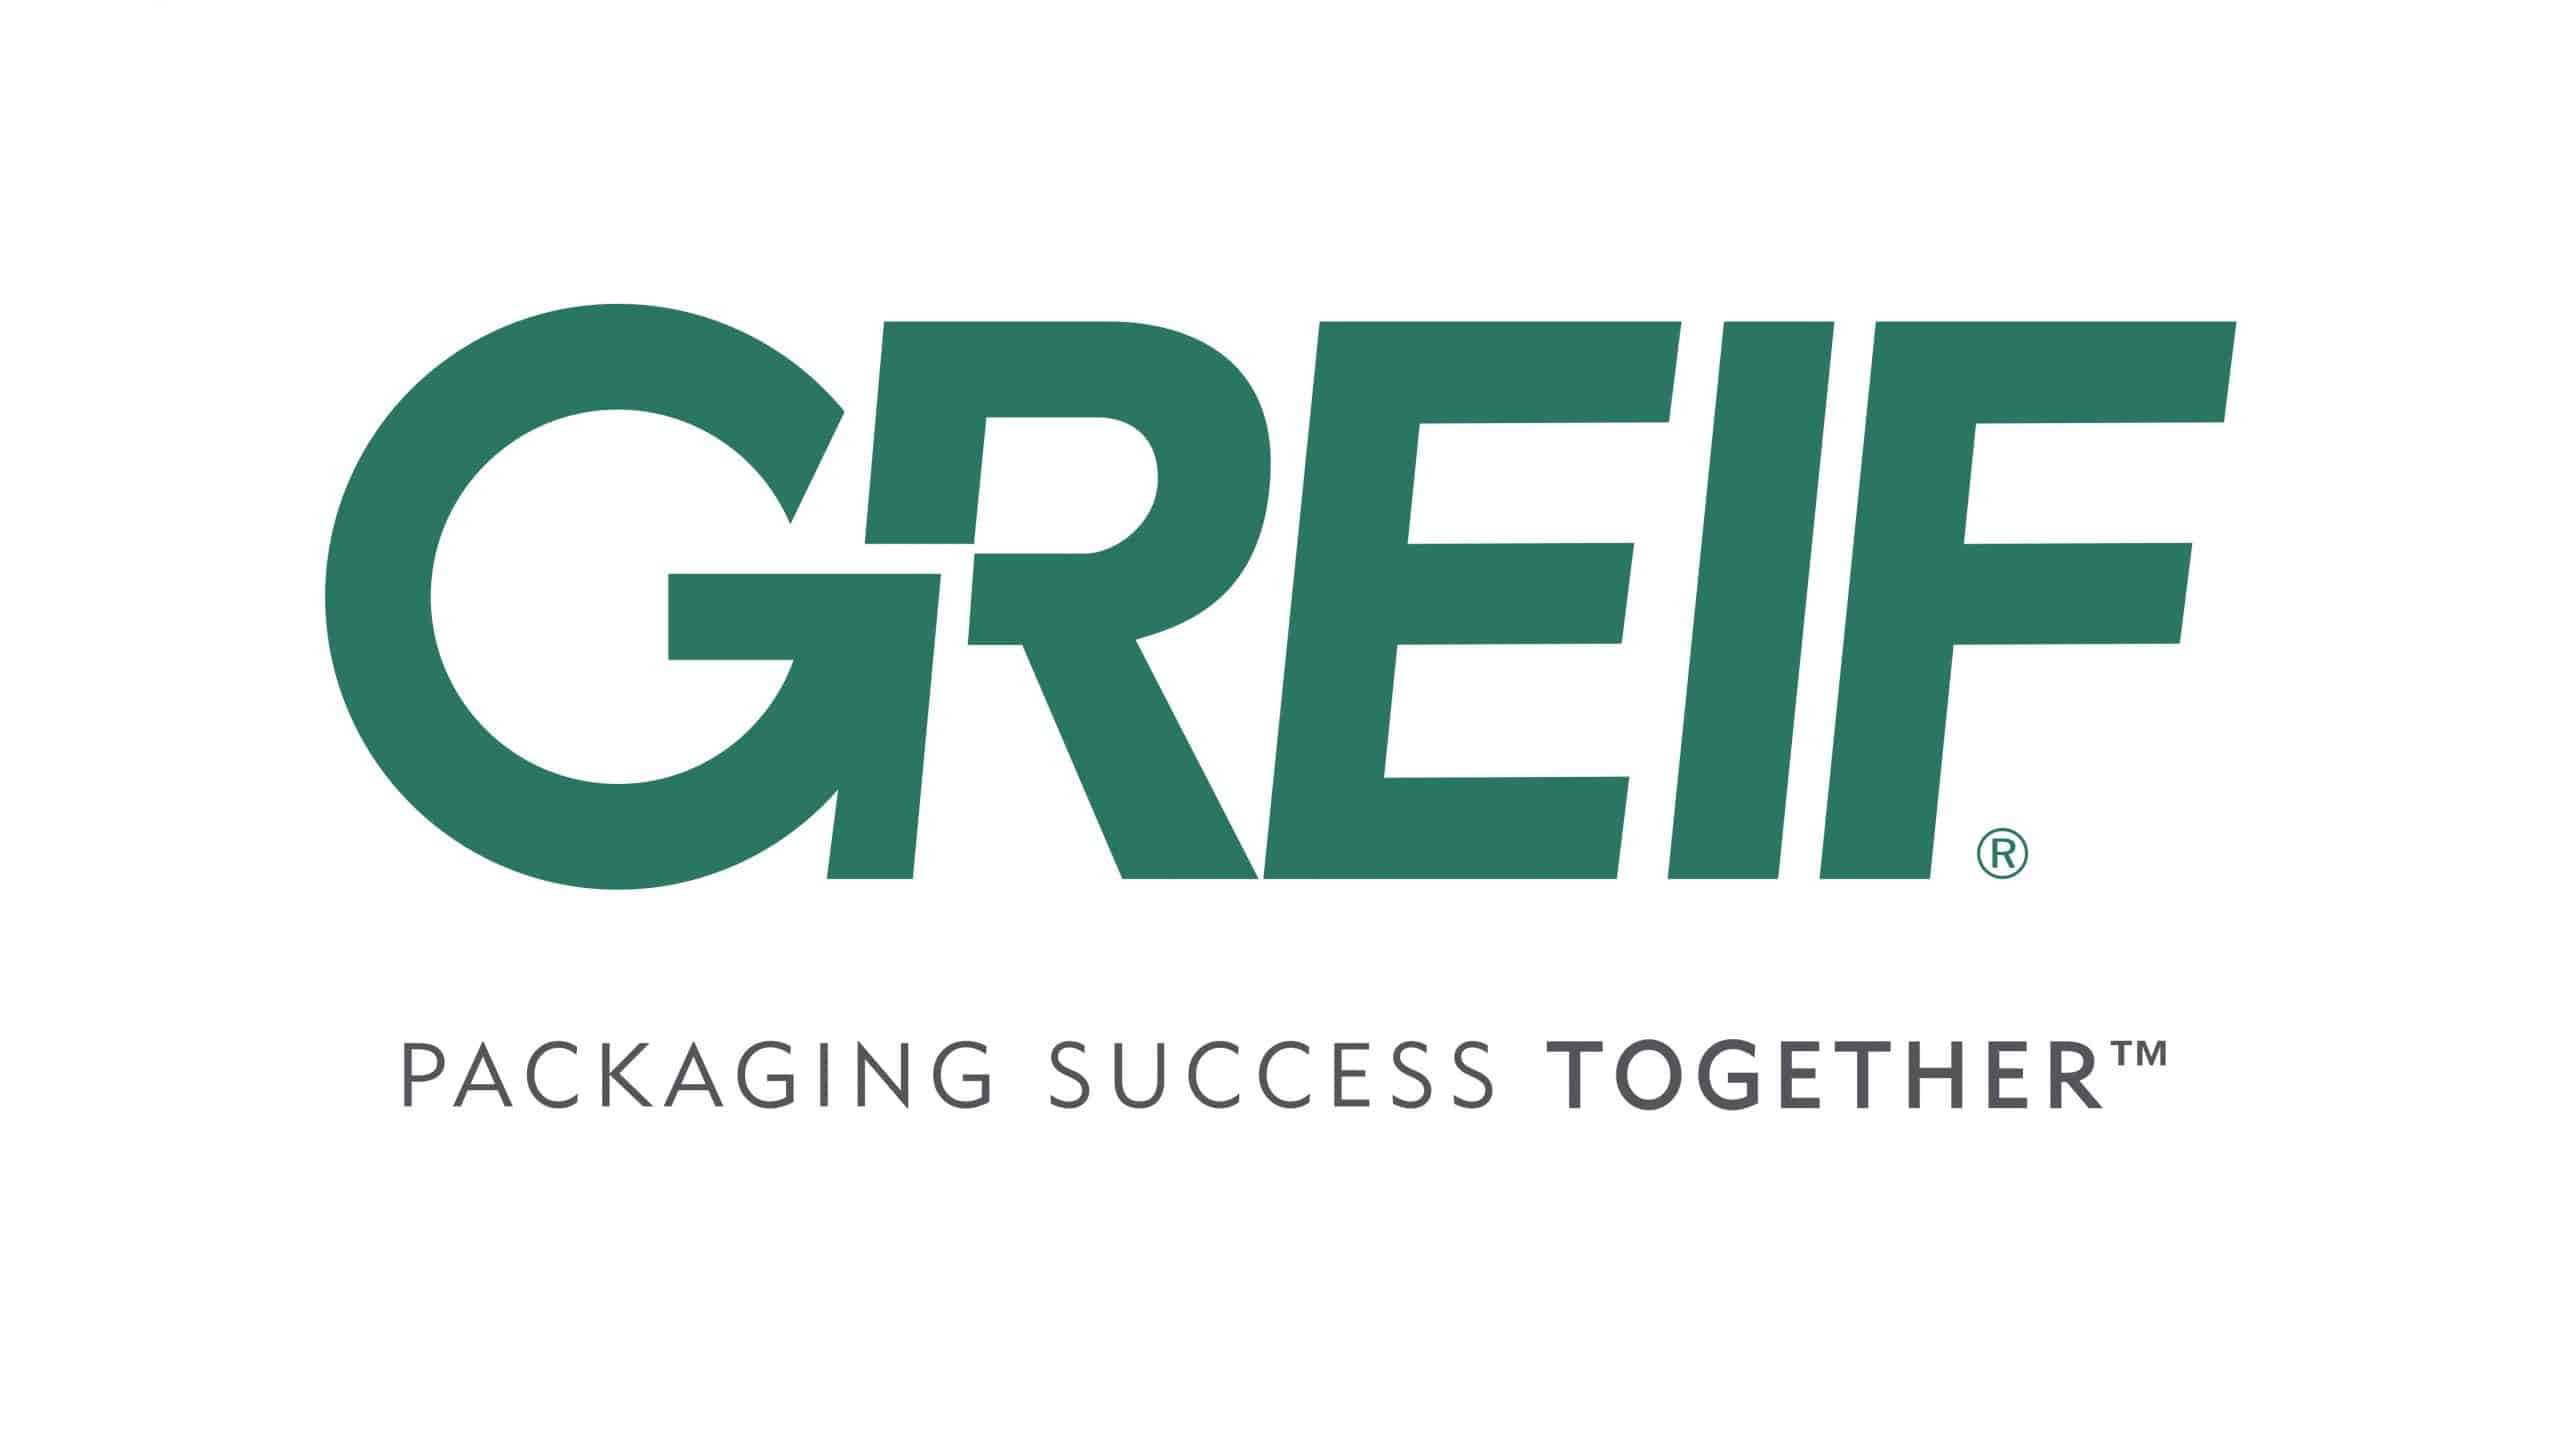 Greif, Inc. logo